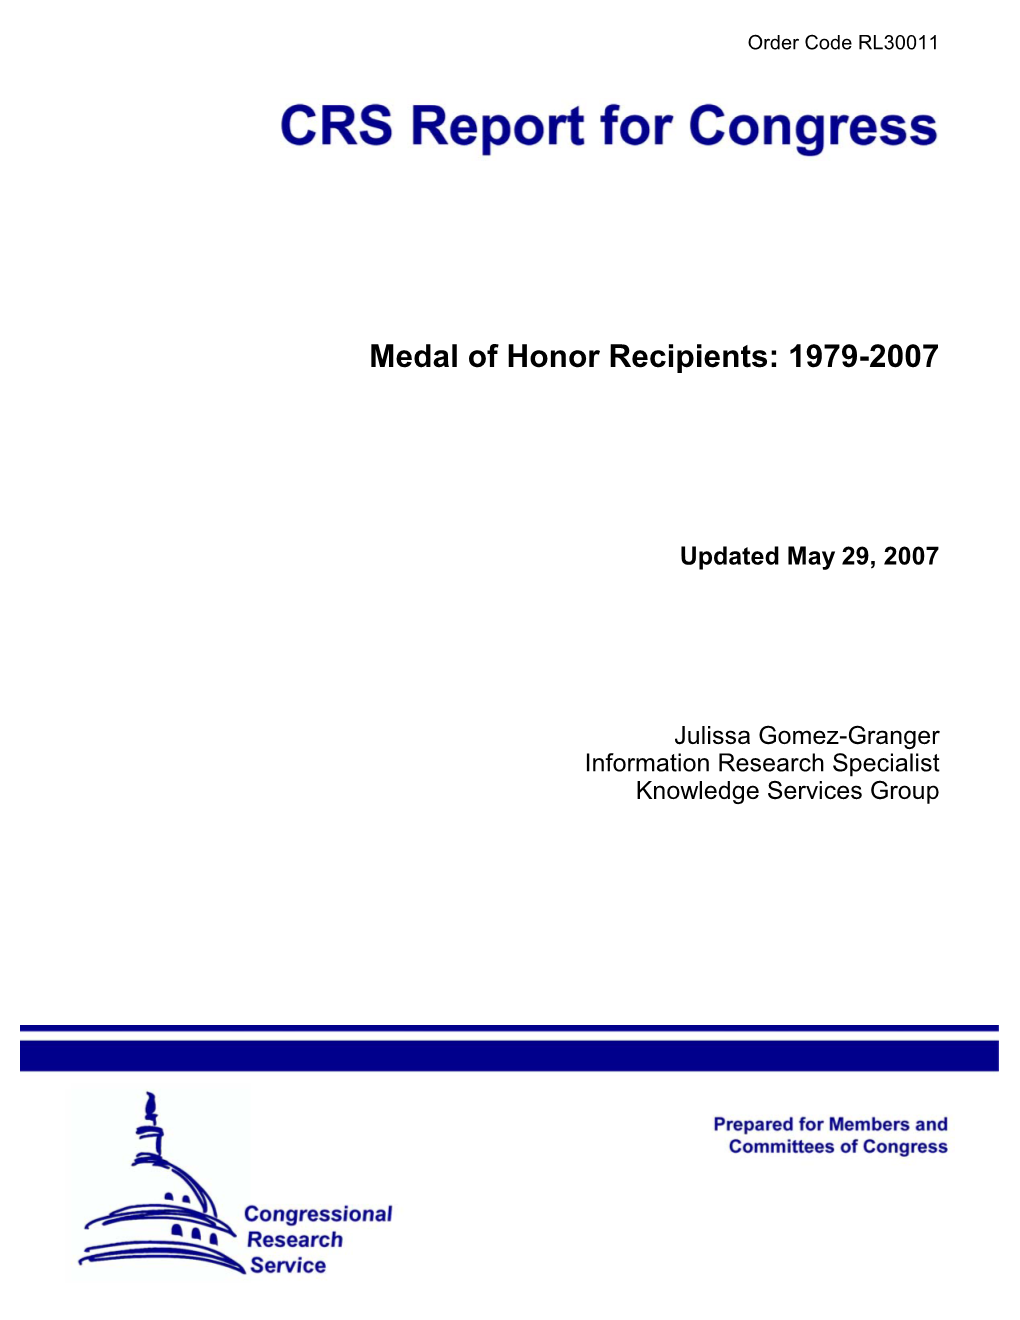 Medal of Honor Recipients: 1979-2007